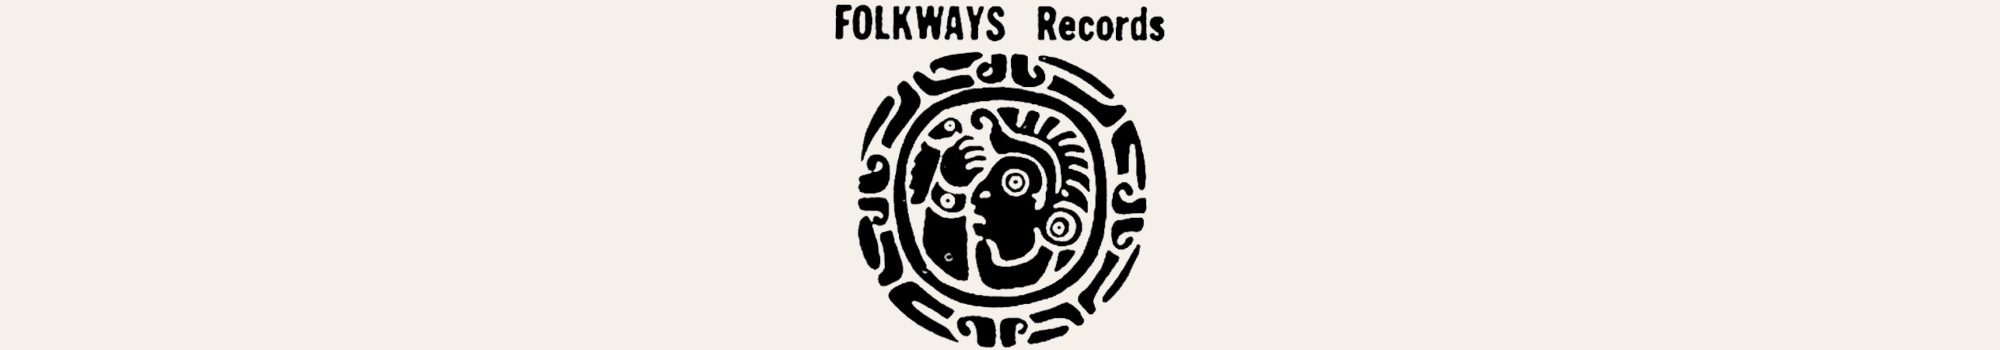 Folkways Records logotyp